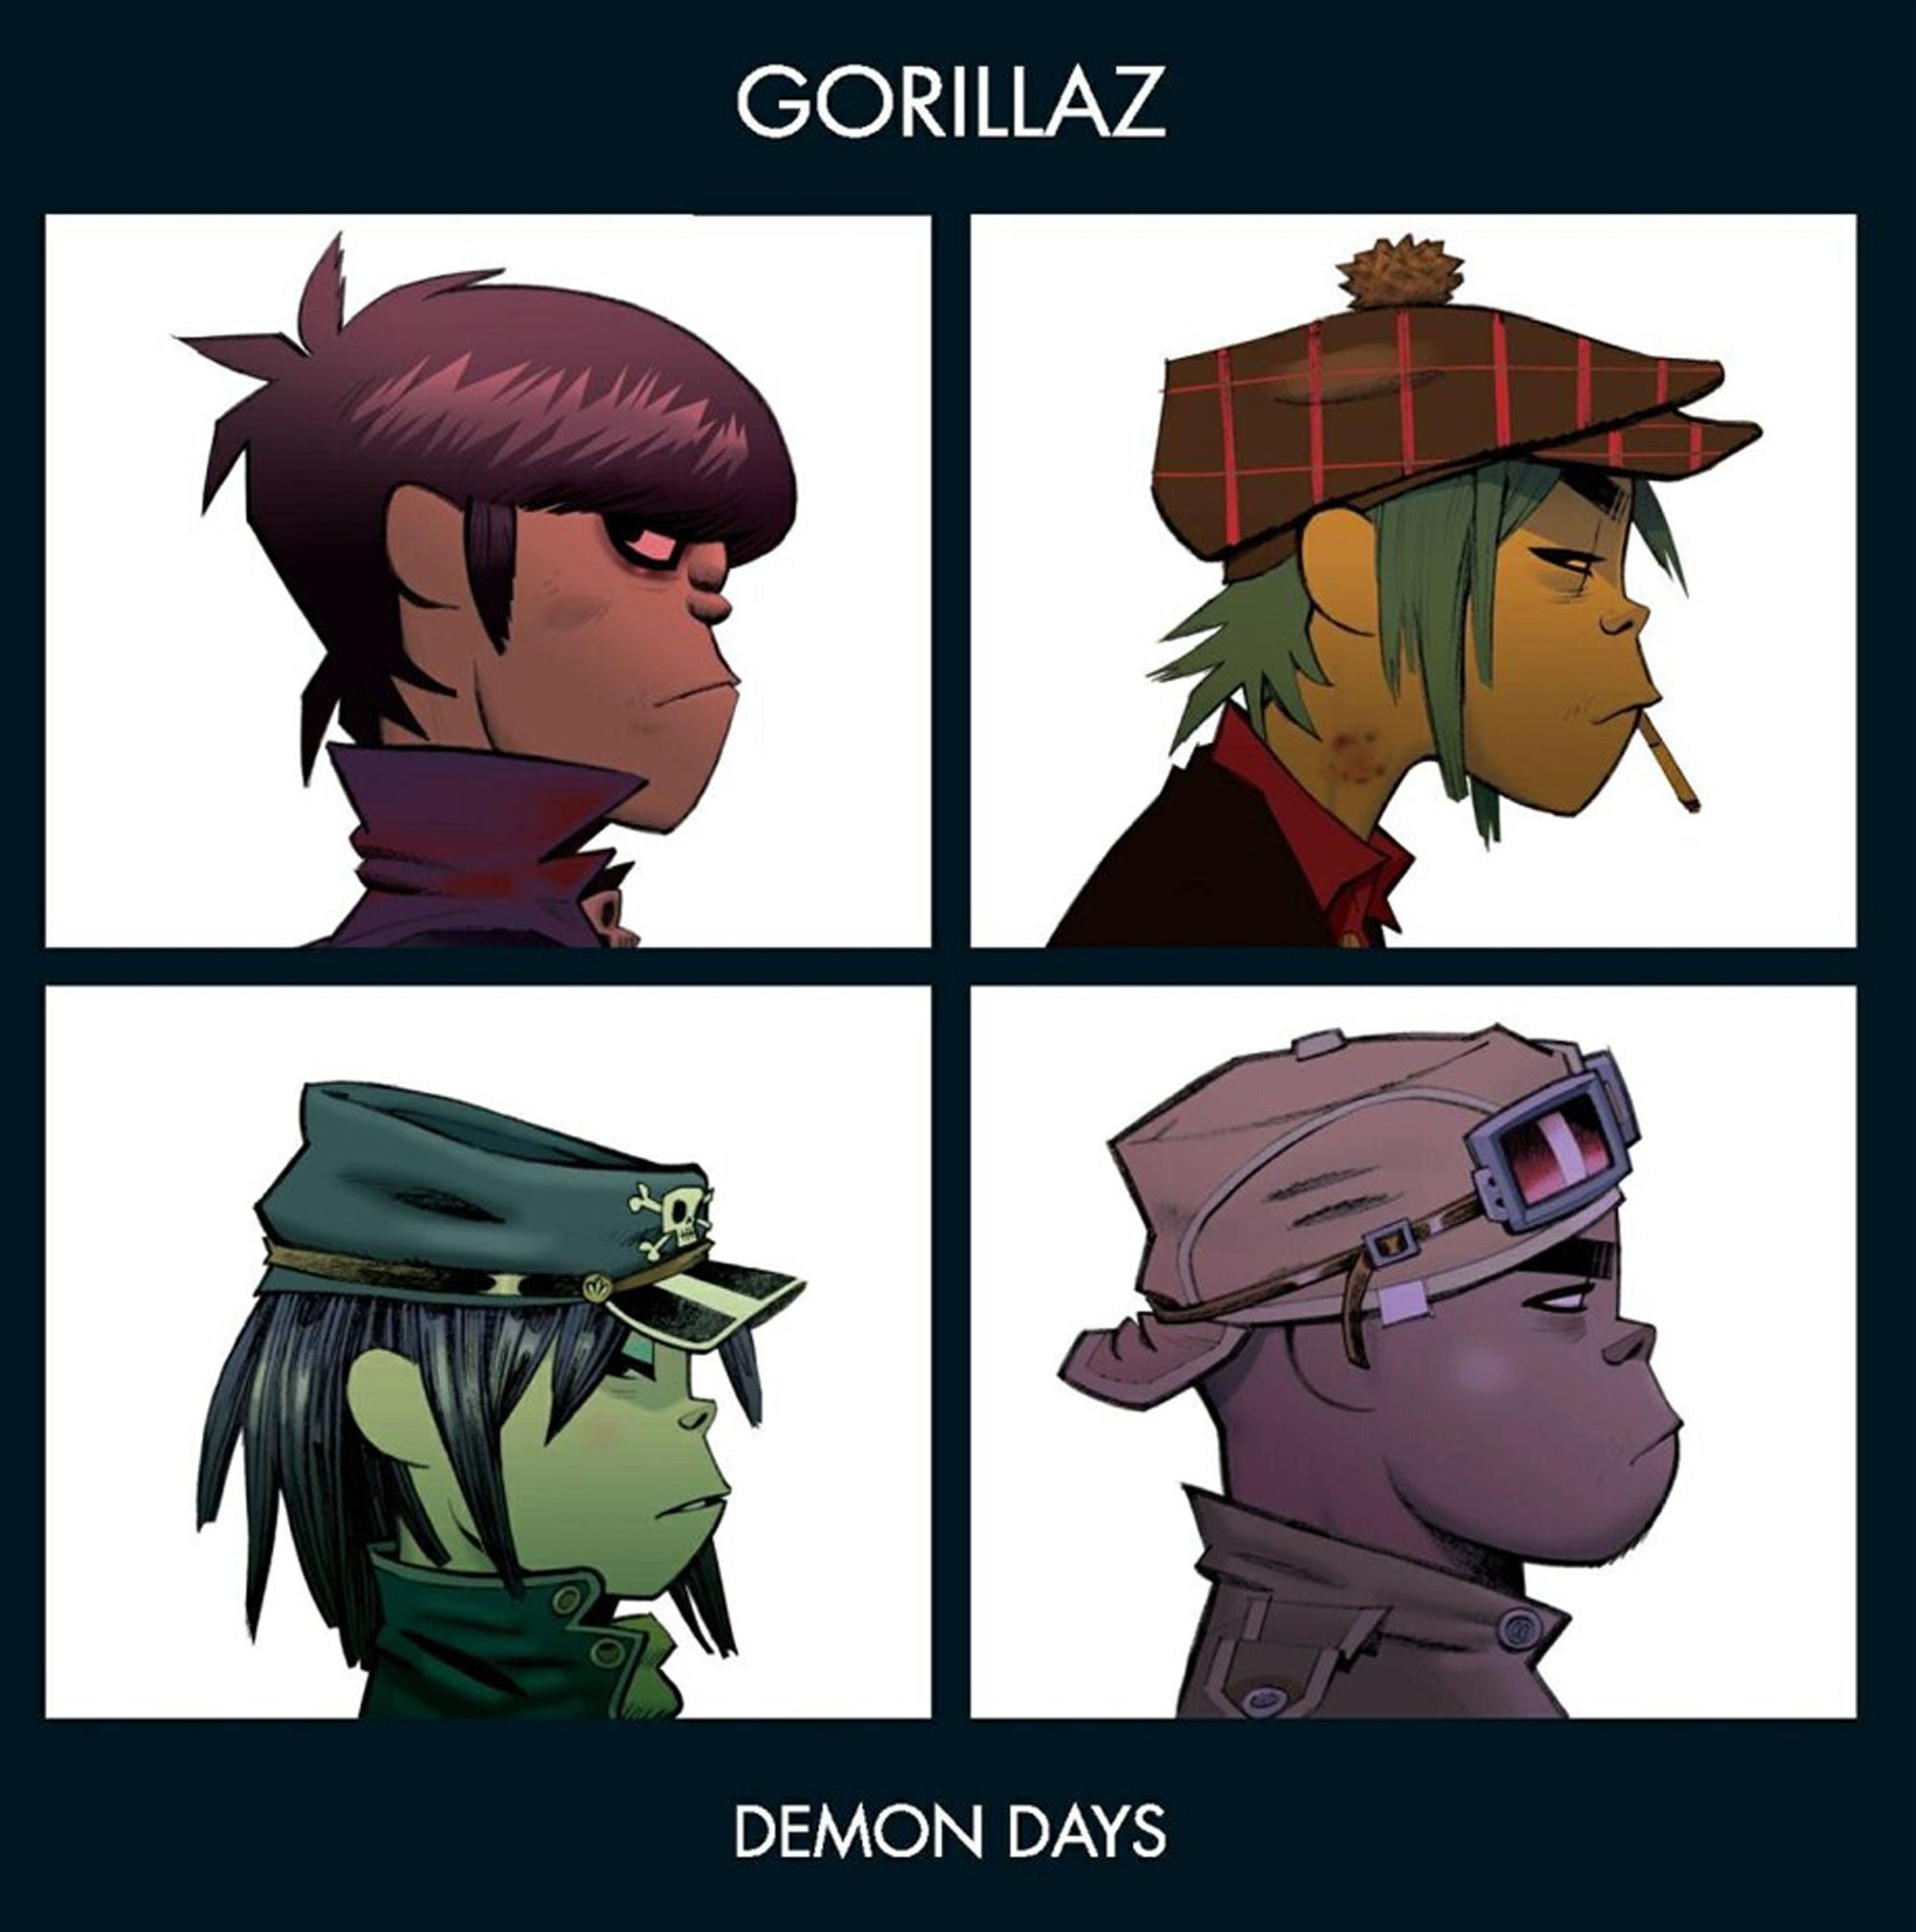 Gorillaz - Demon Days (2LP Gatefold Sleeve)